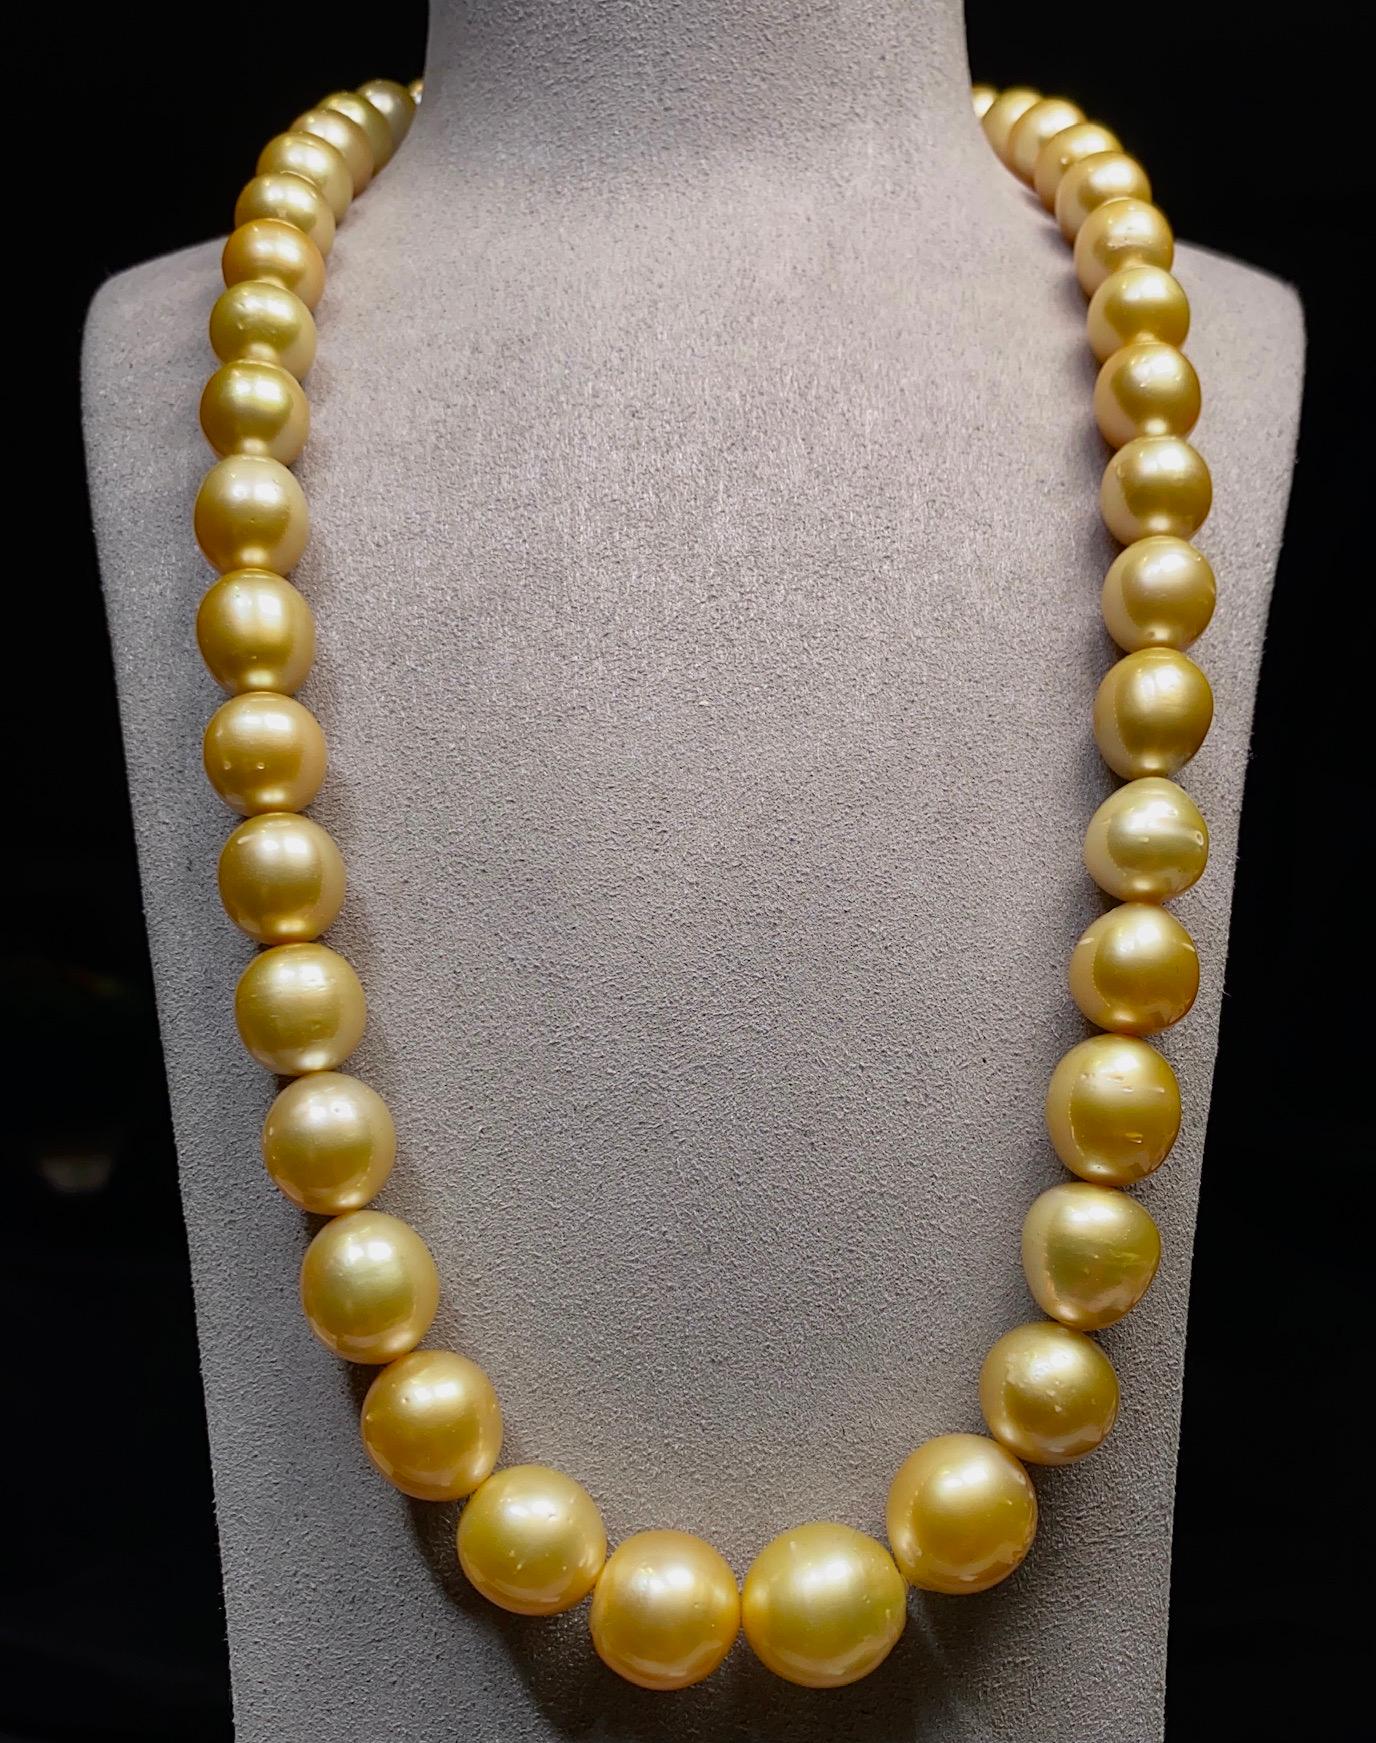 Ein Strang goldener Südseeperlen mit einem Verschluss aus 18 Karat Gold. Die Perlen sind von goldgelber Farbe mit grünem Überton. Dies ist eine große Halskette, da die größte Perle 16 mm misst.

Die goldenen Südseeperlen sind zwischen 12,1 mm und 16